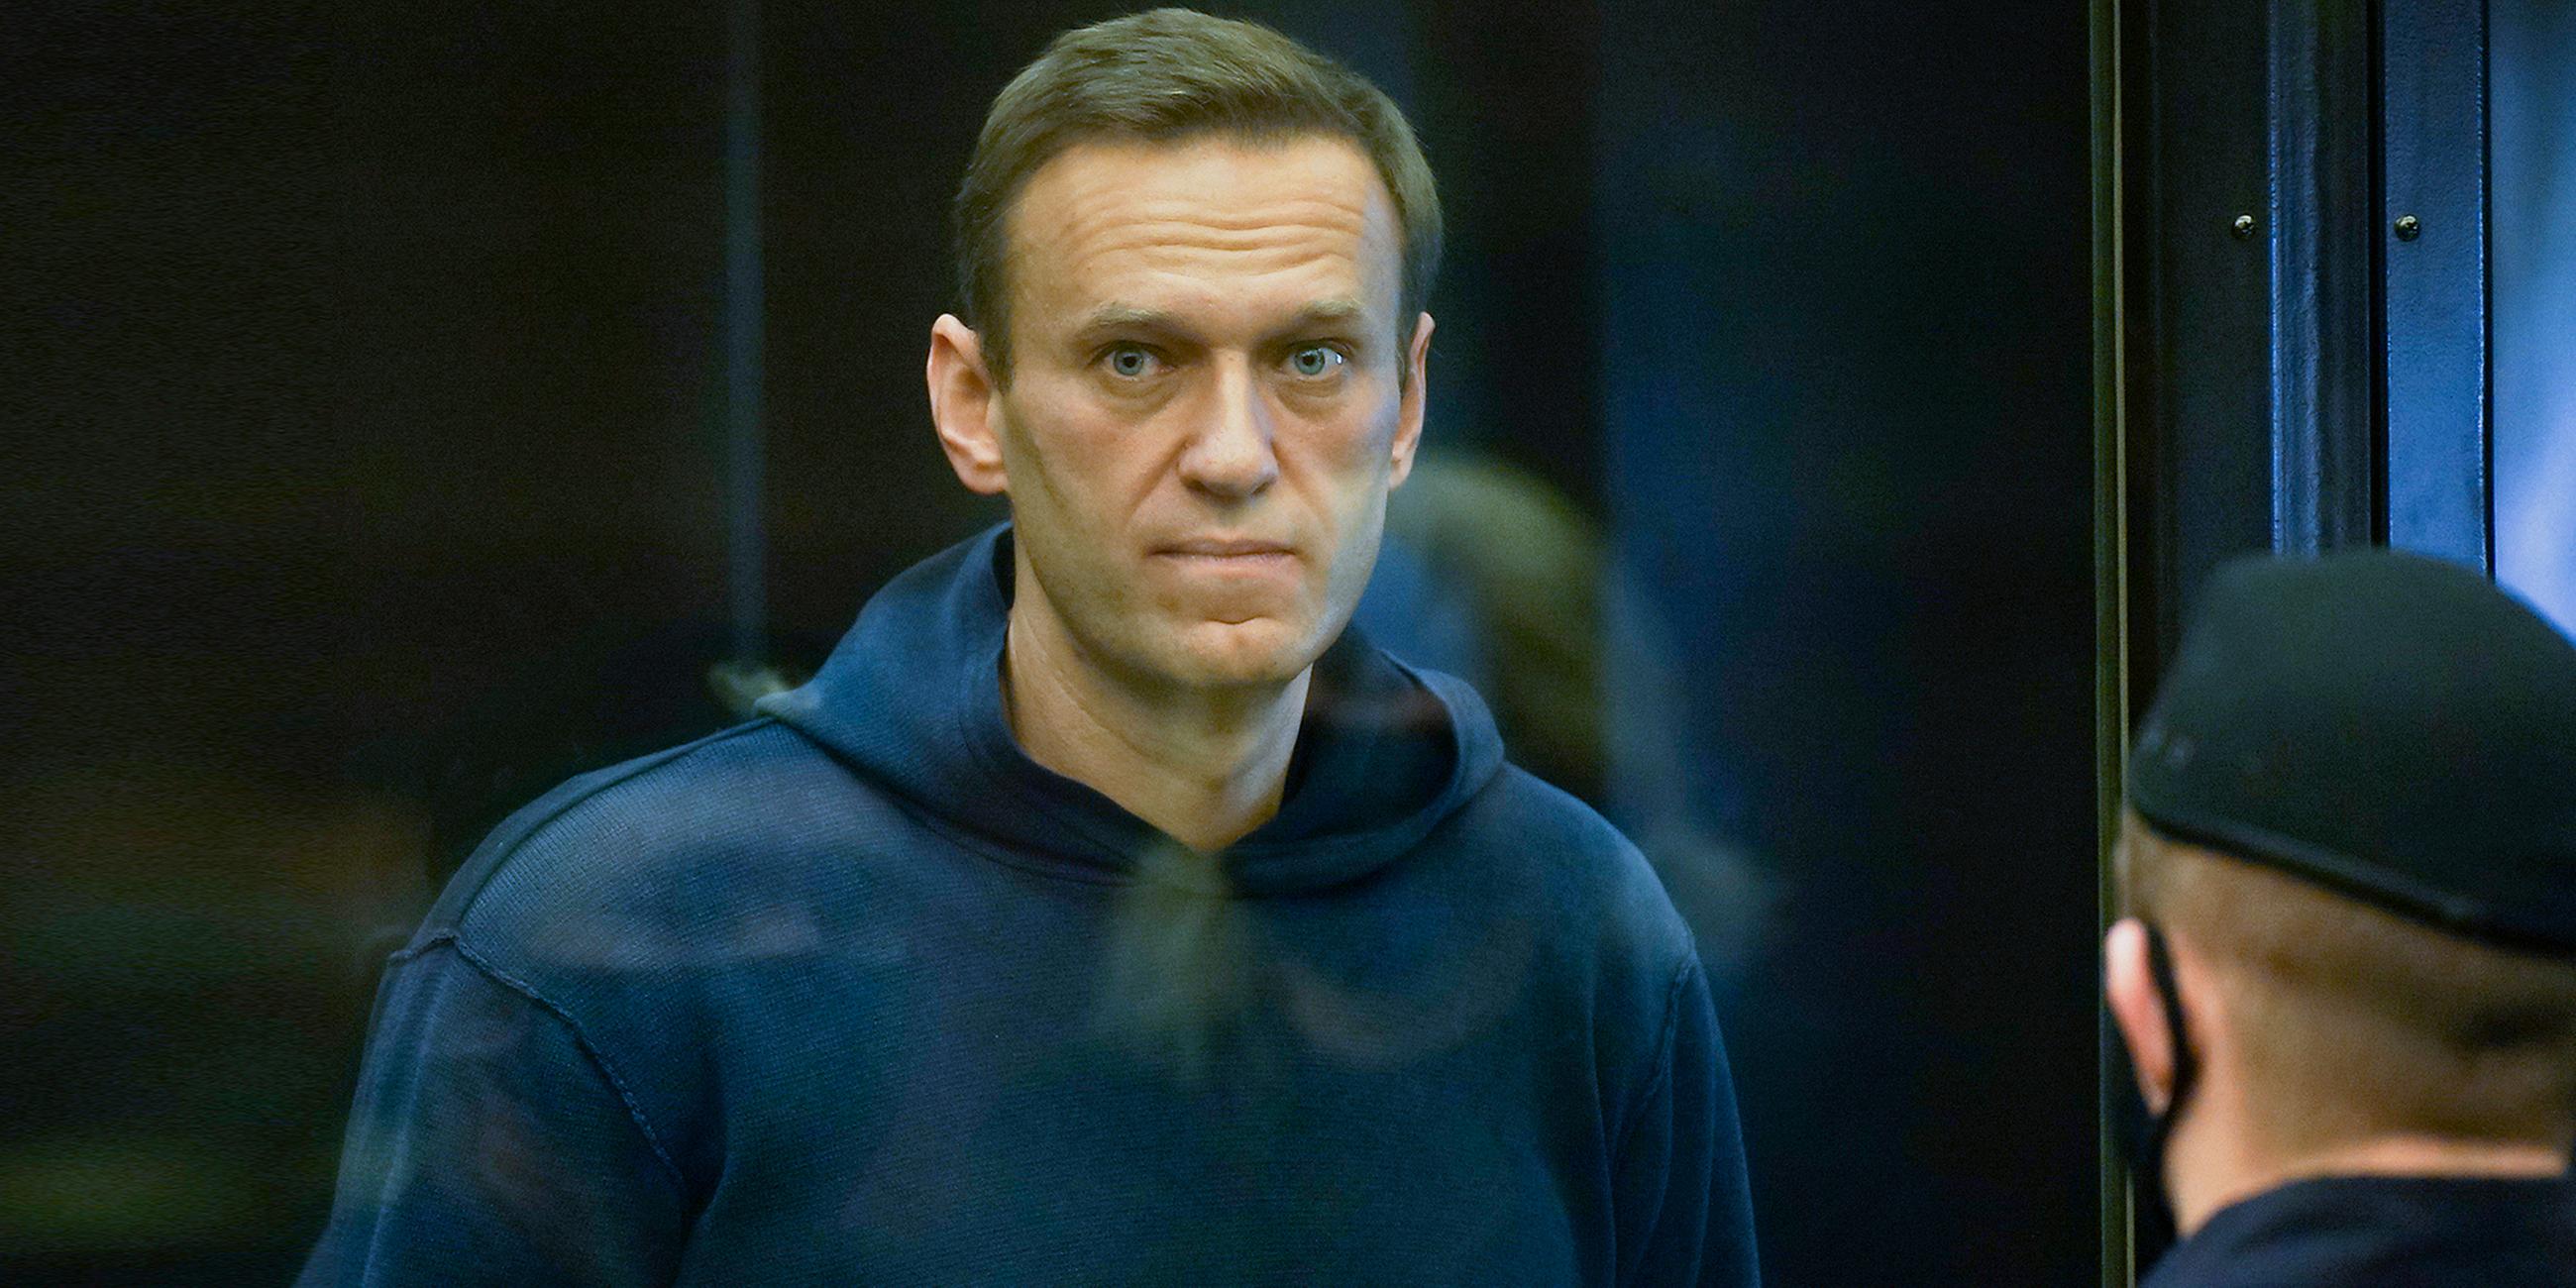 Alexey Nawalny steht im Käfig im Gericht, bekleidet mit einem dunkelblauen Hoody und schaut direkt durch die Glasscheibe in die Kamera.